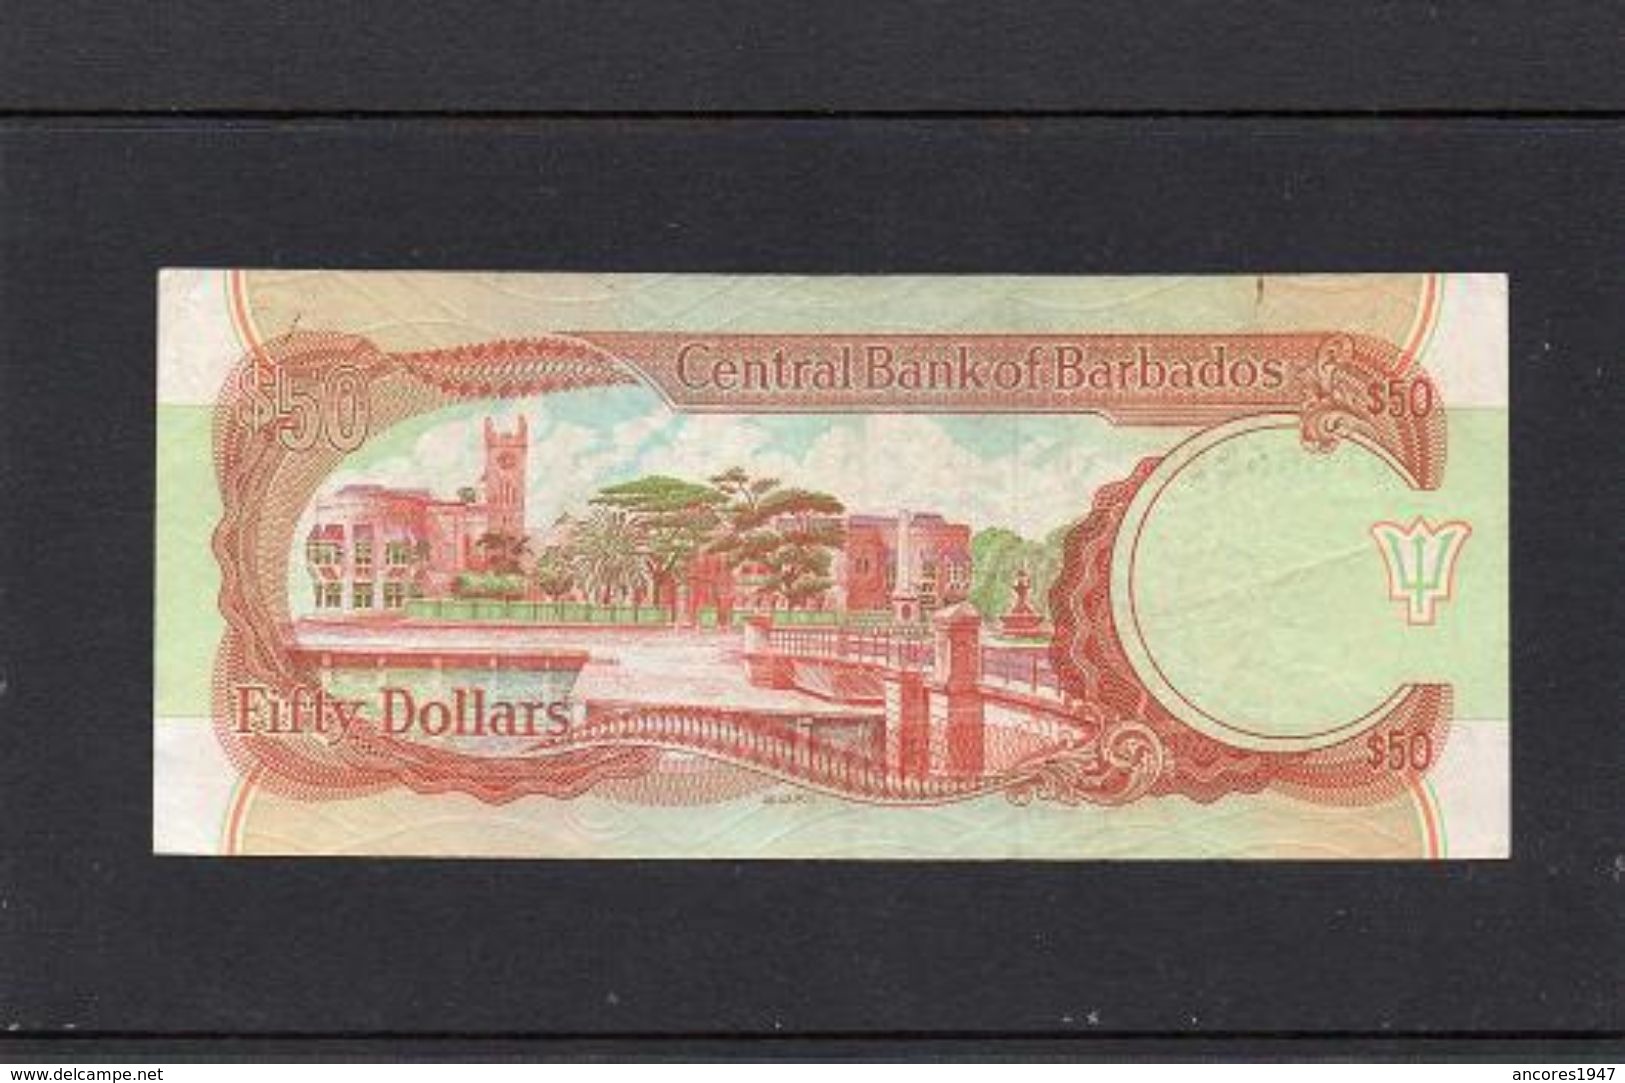 BARBADOS 1989, 50 DOLLARS, P-40a, CIRCULADO, 2 ESCANER - Barbados